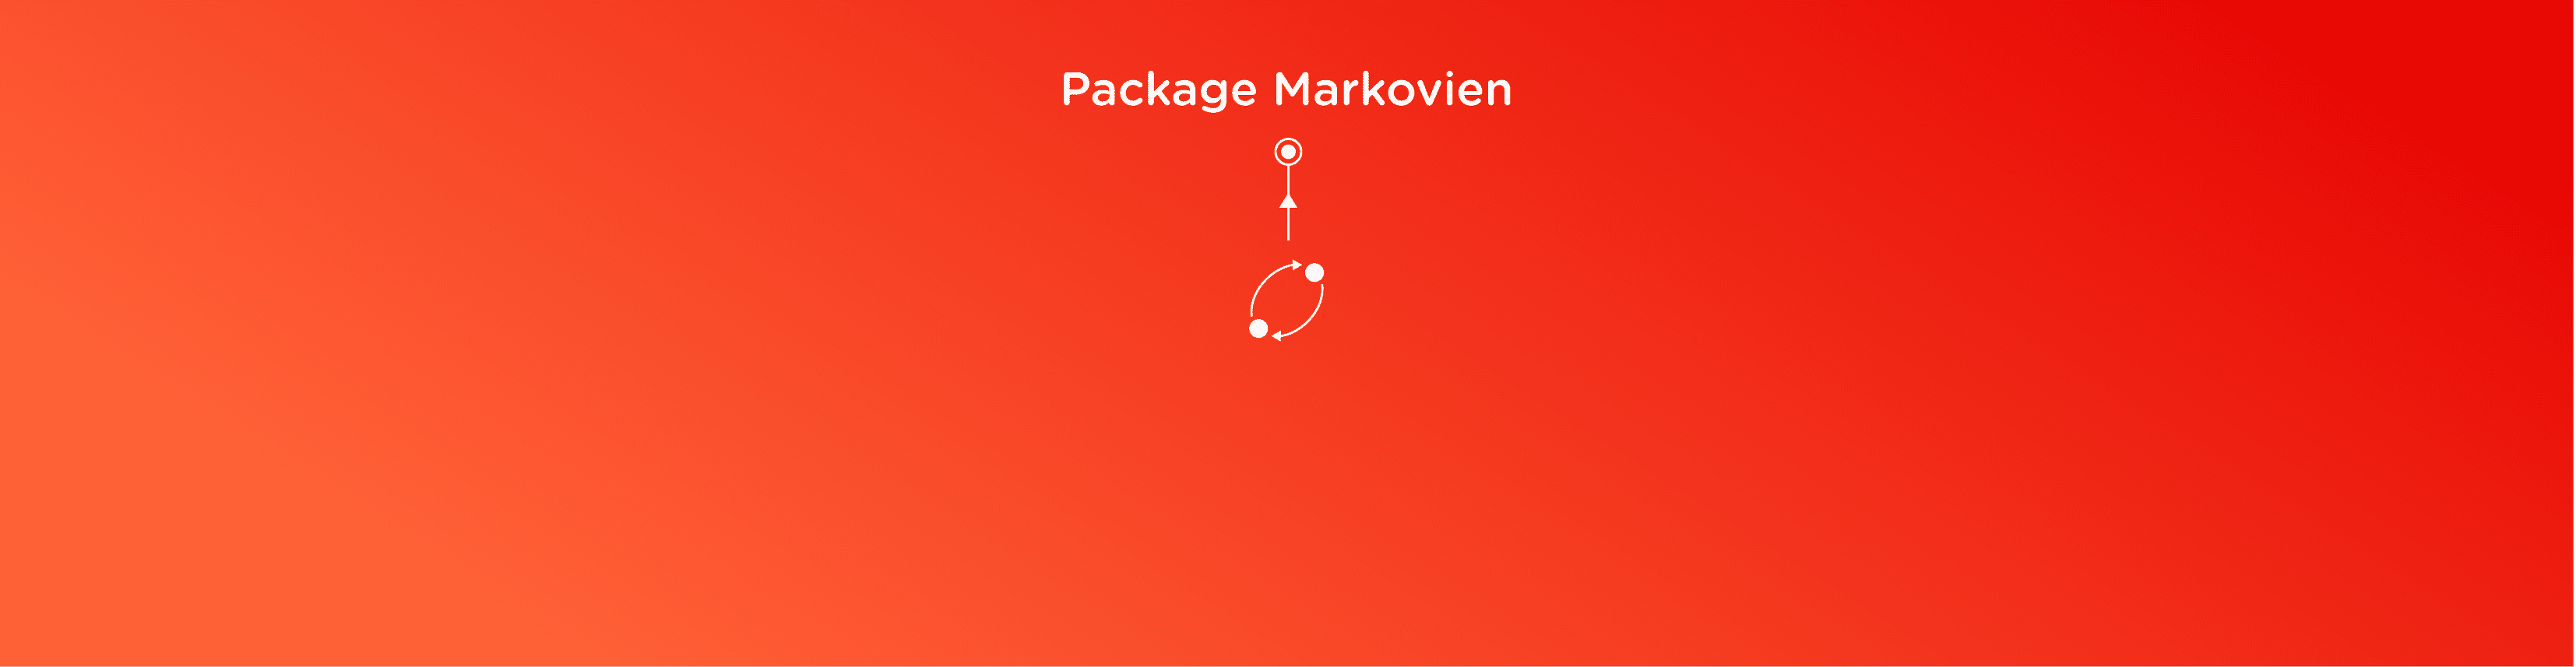 Package Markovien